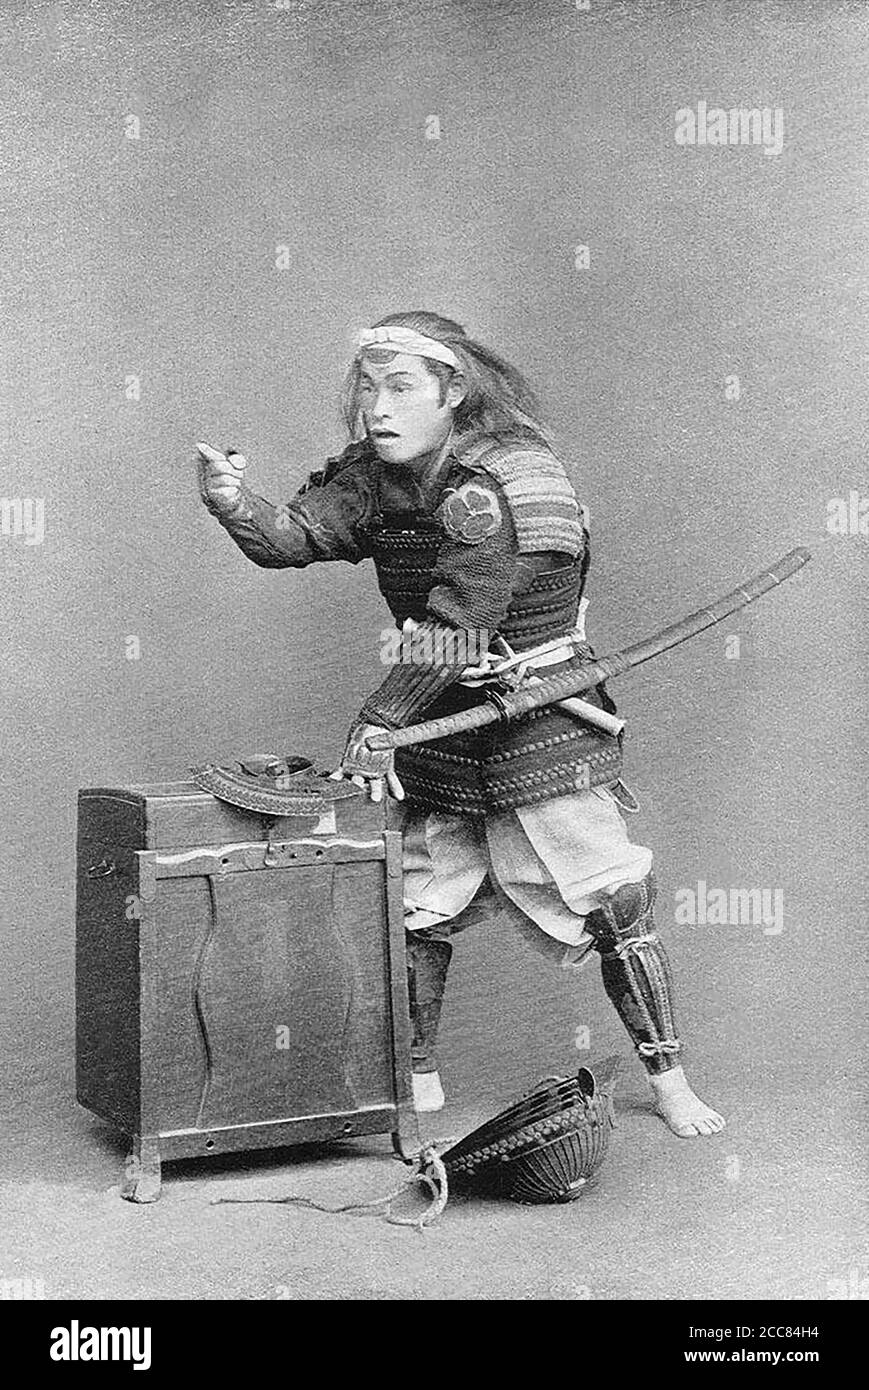 Japan: 'Ein Krieger auf der Alarmstufe'. Chemigraph aus der Serie 'Military Costumes in Old Japan' von Kazumasa Ogawa (1860-1929), 1893, Tokio. Ogawa Kazumasa, auch bekannt als Ogawa Kazuma oder Ogawa Isshin, war ein japanischer Fotograf, Chemigraph, Drucker und Verleger der Meiji-Ära. Er war ein Pionier im photomechanischen Druck und der Fotografie und wurde in den Samurai-Clan von Matsudaira geboren, wo er im Alter von 15 Jahren Englisch und Fotografie studierte. Stockfoto